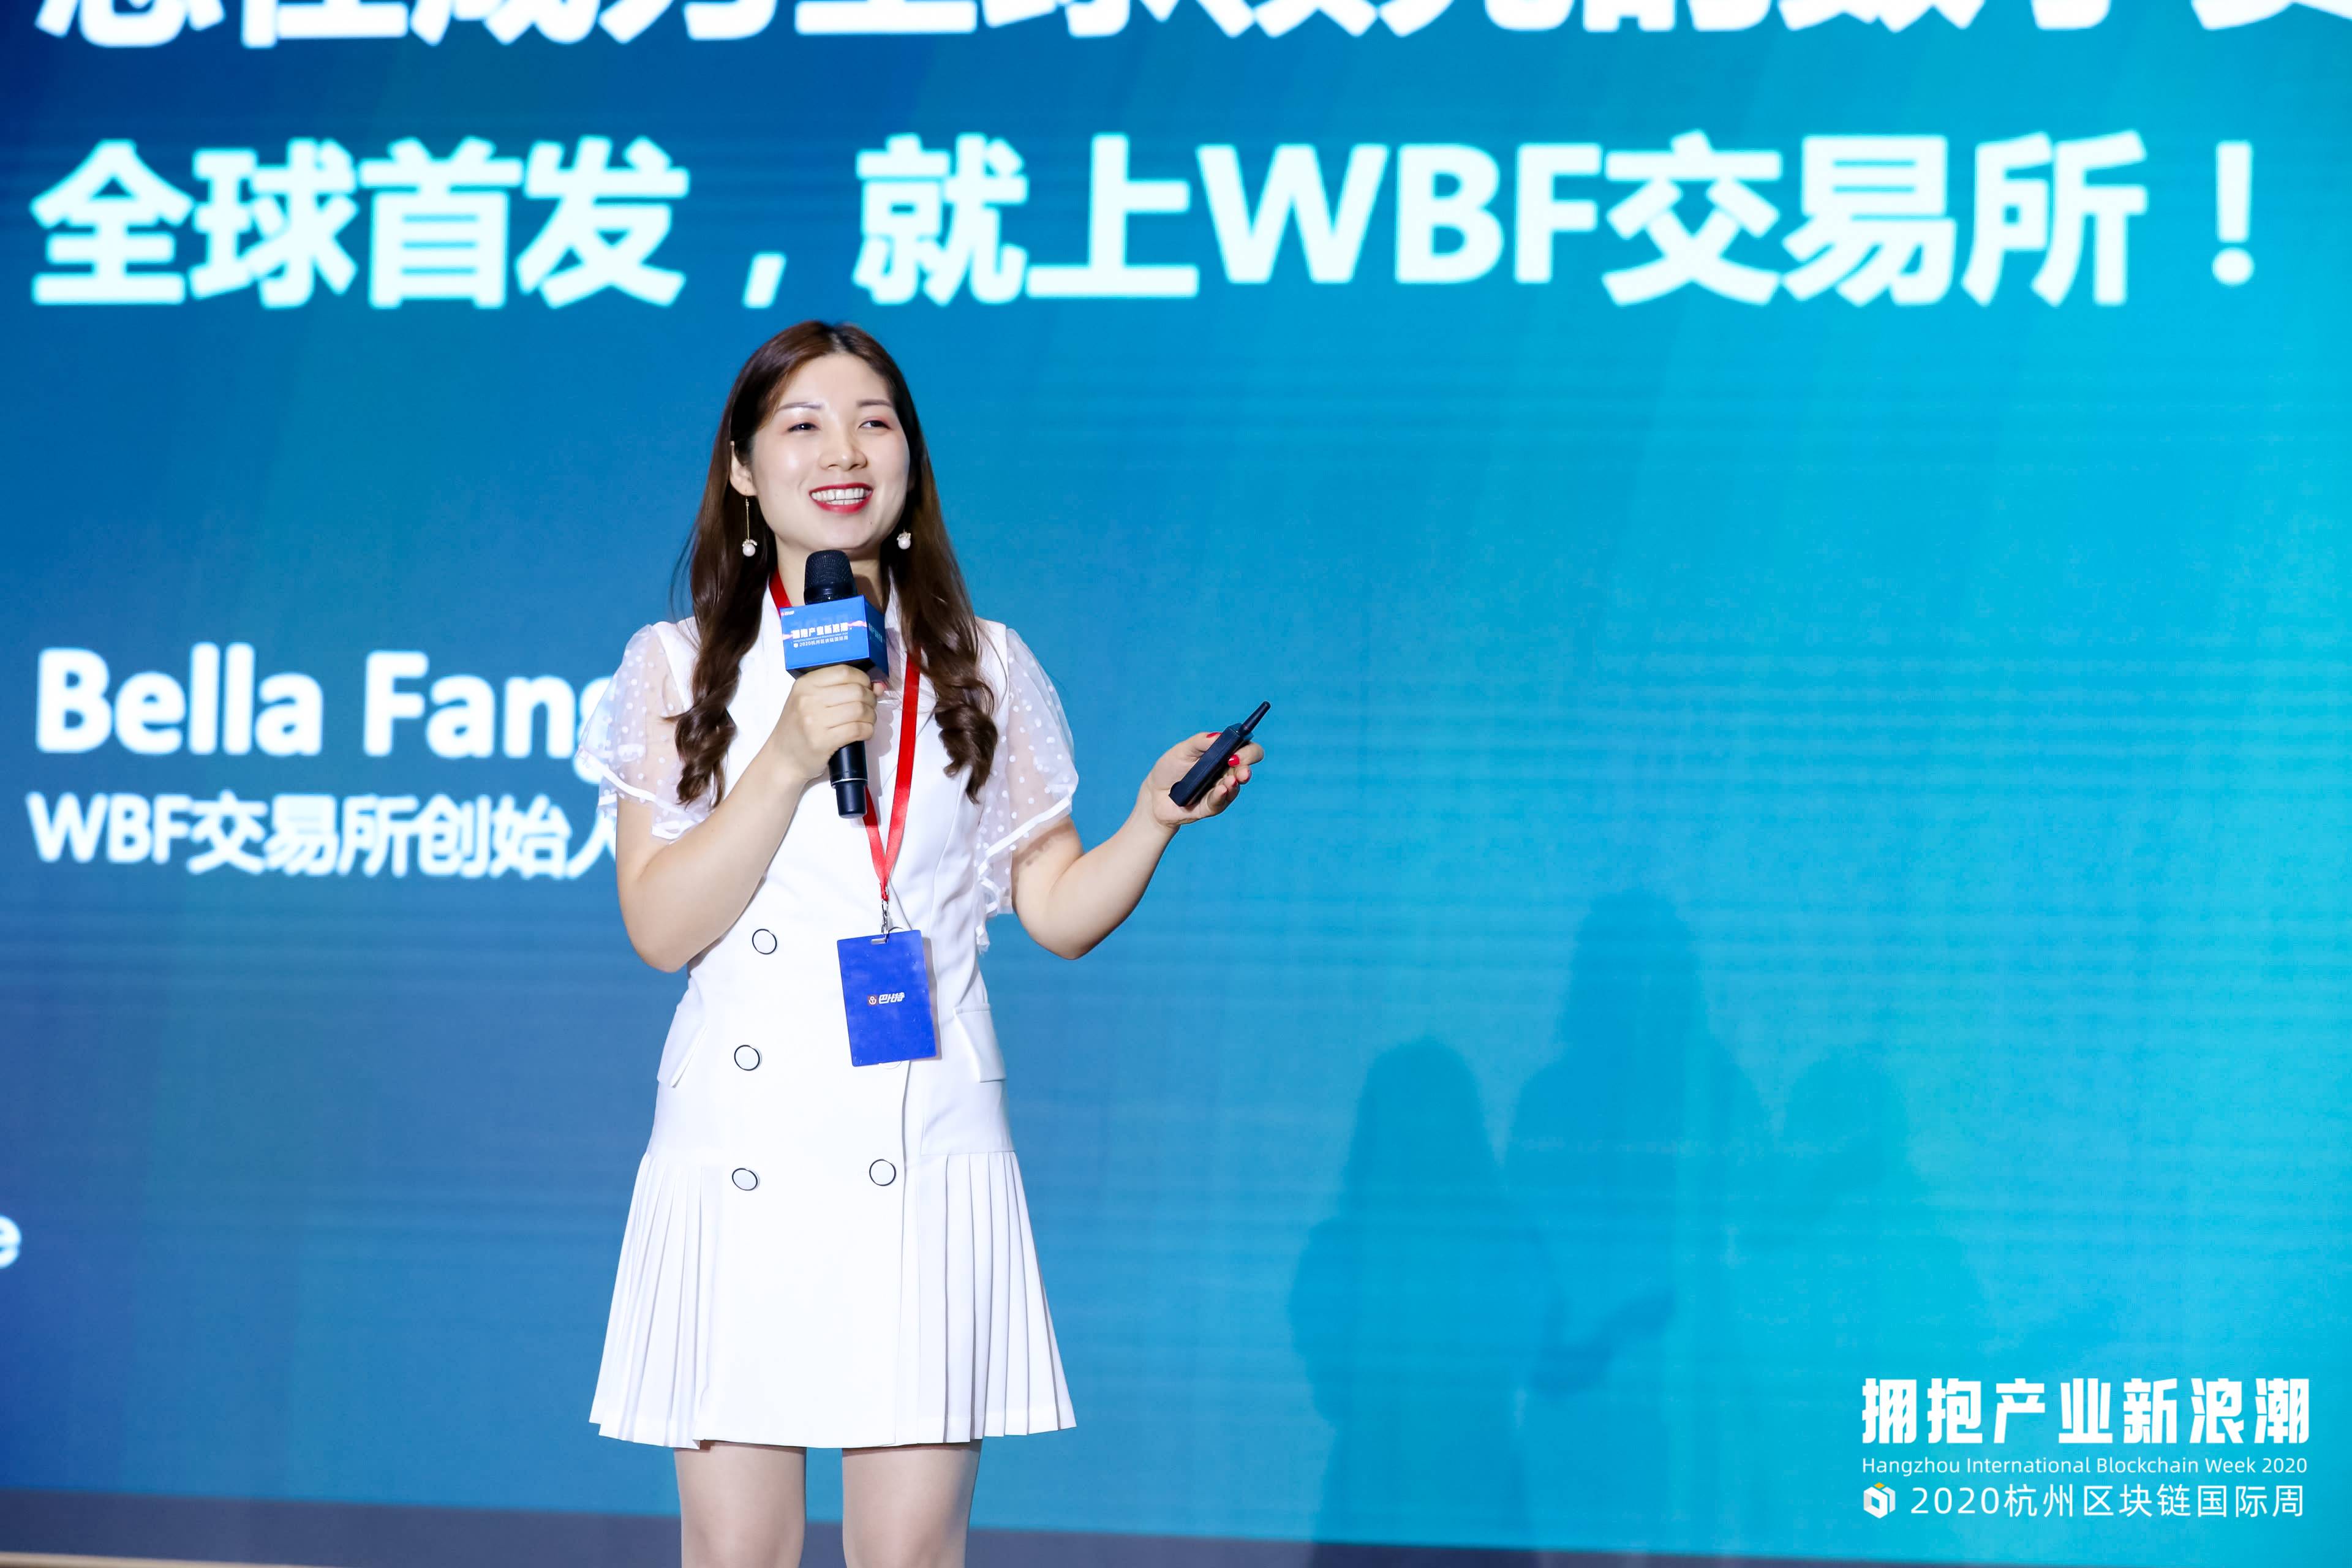 杭州区块链国际周 | WBF交易所Bella Fang：新锐交易所，如何打造“流量帝国”？